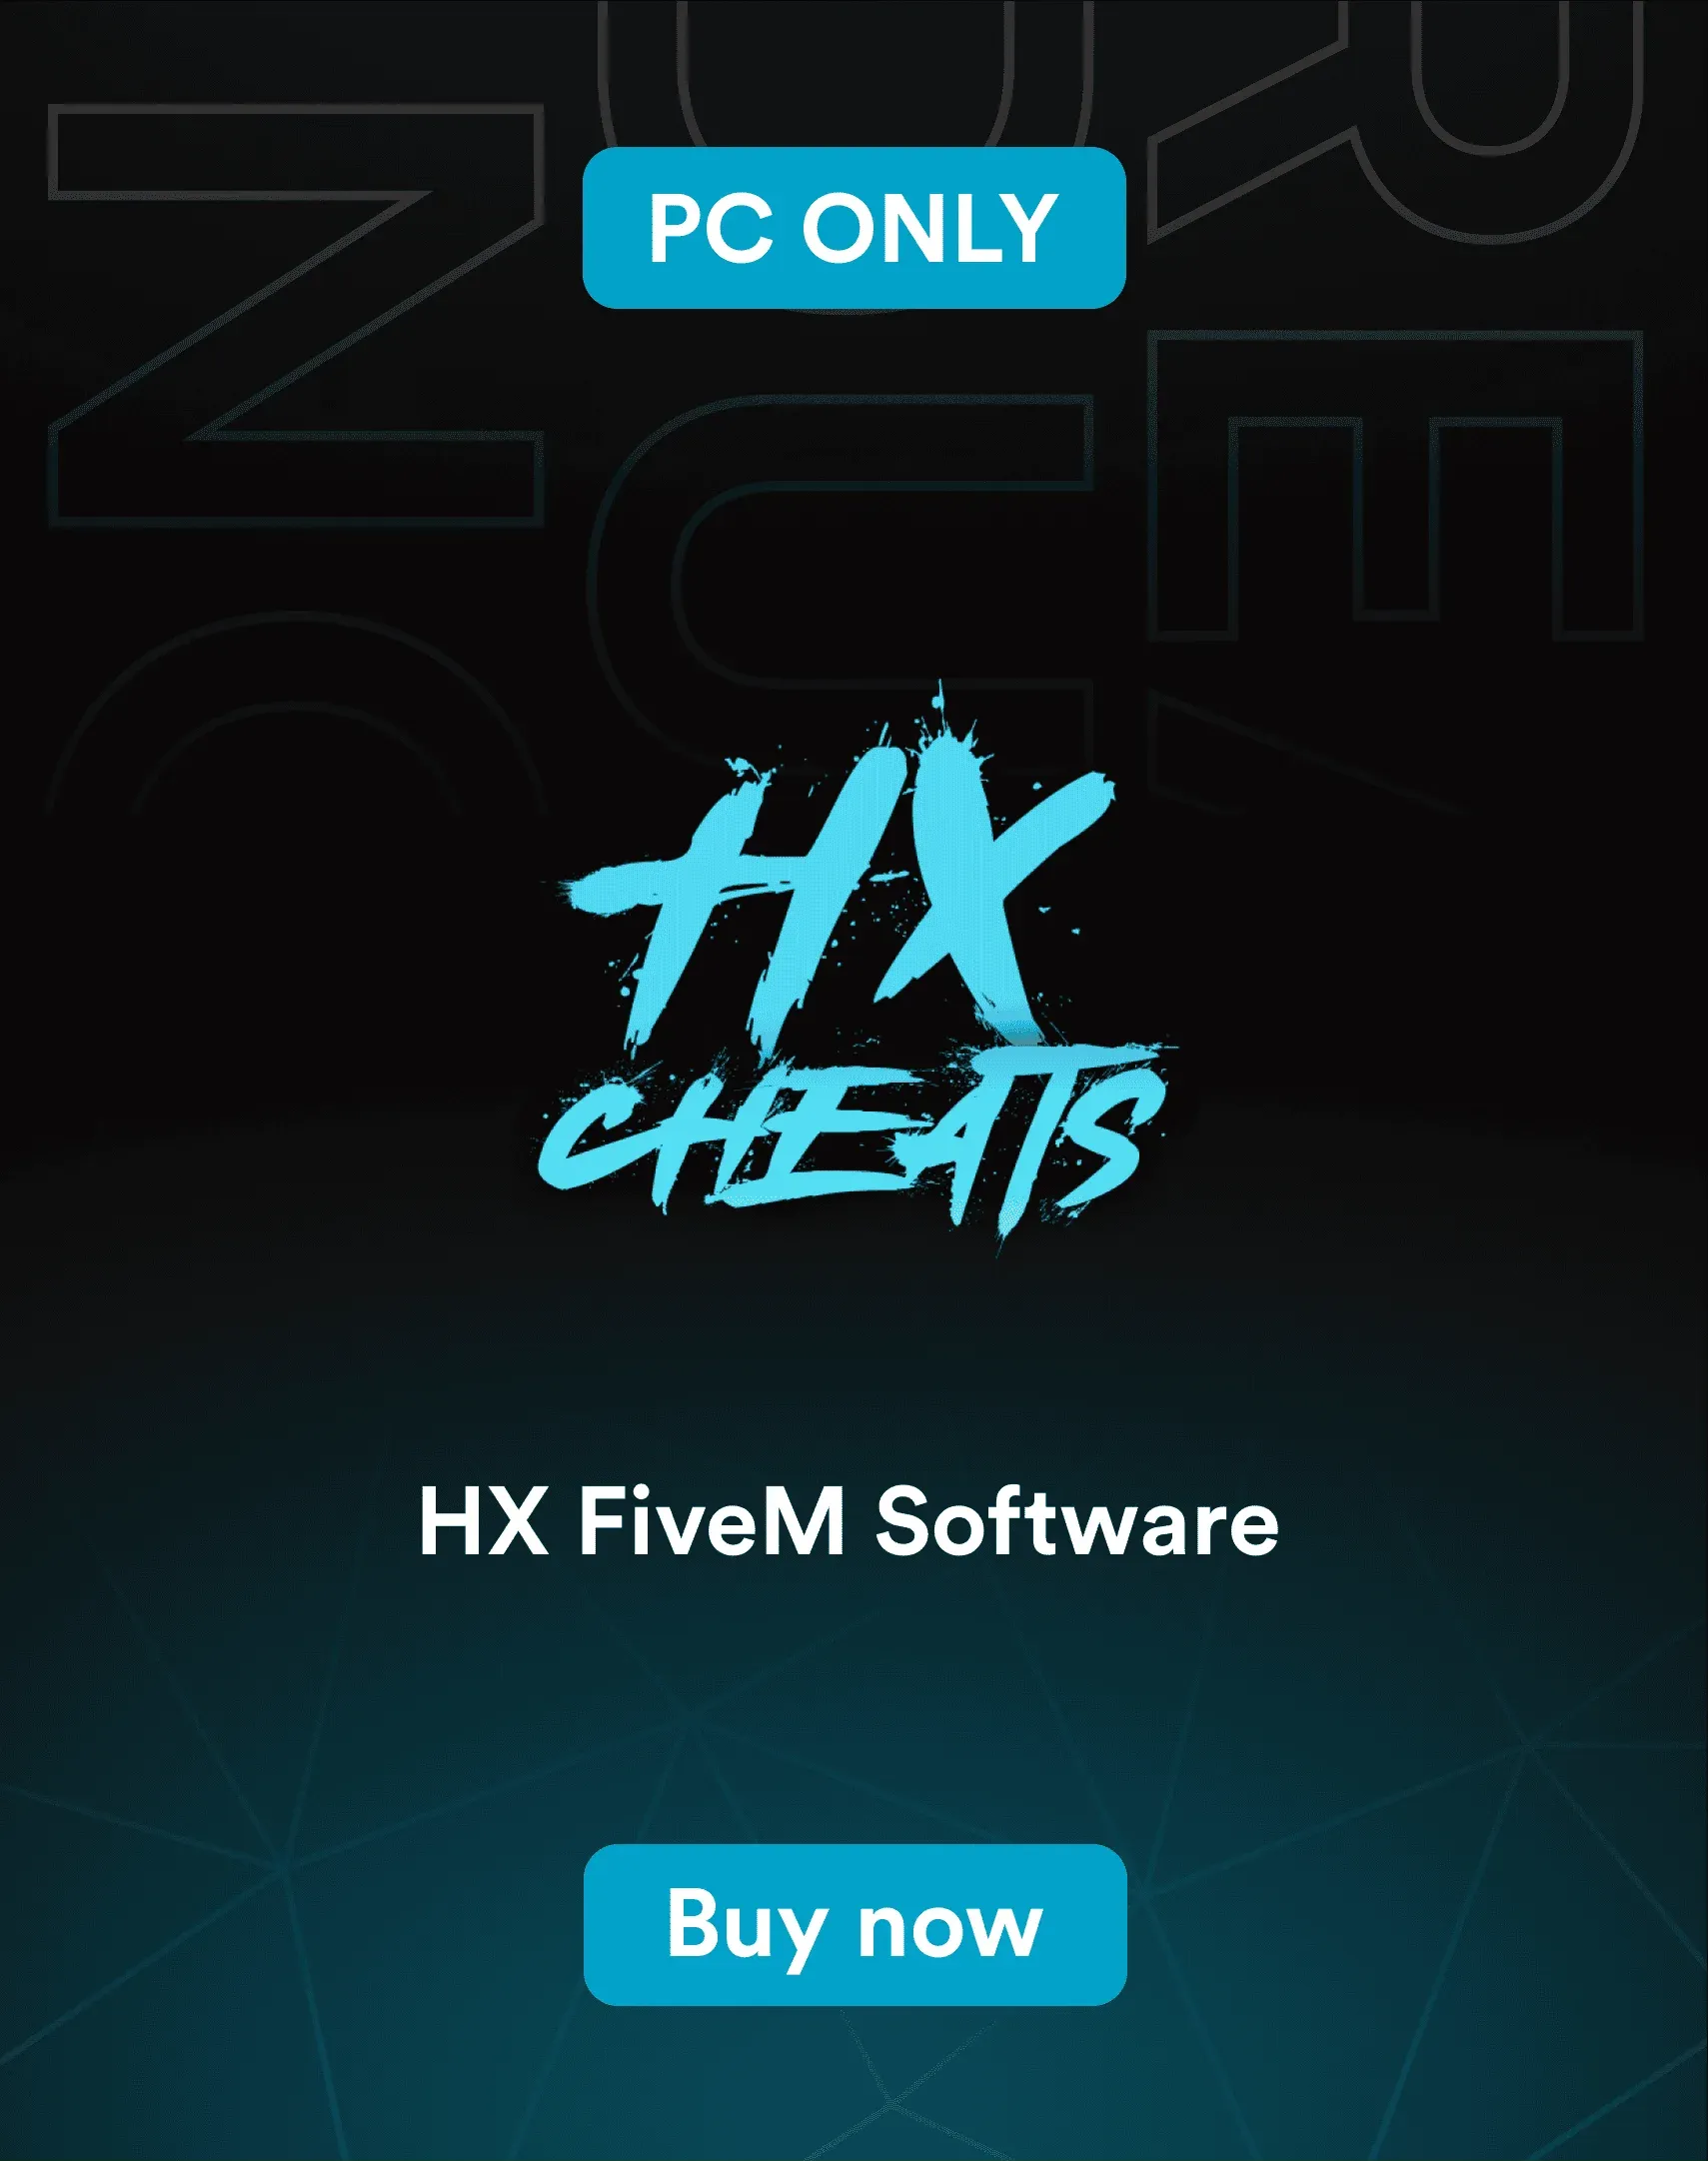 HX FiveM Software